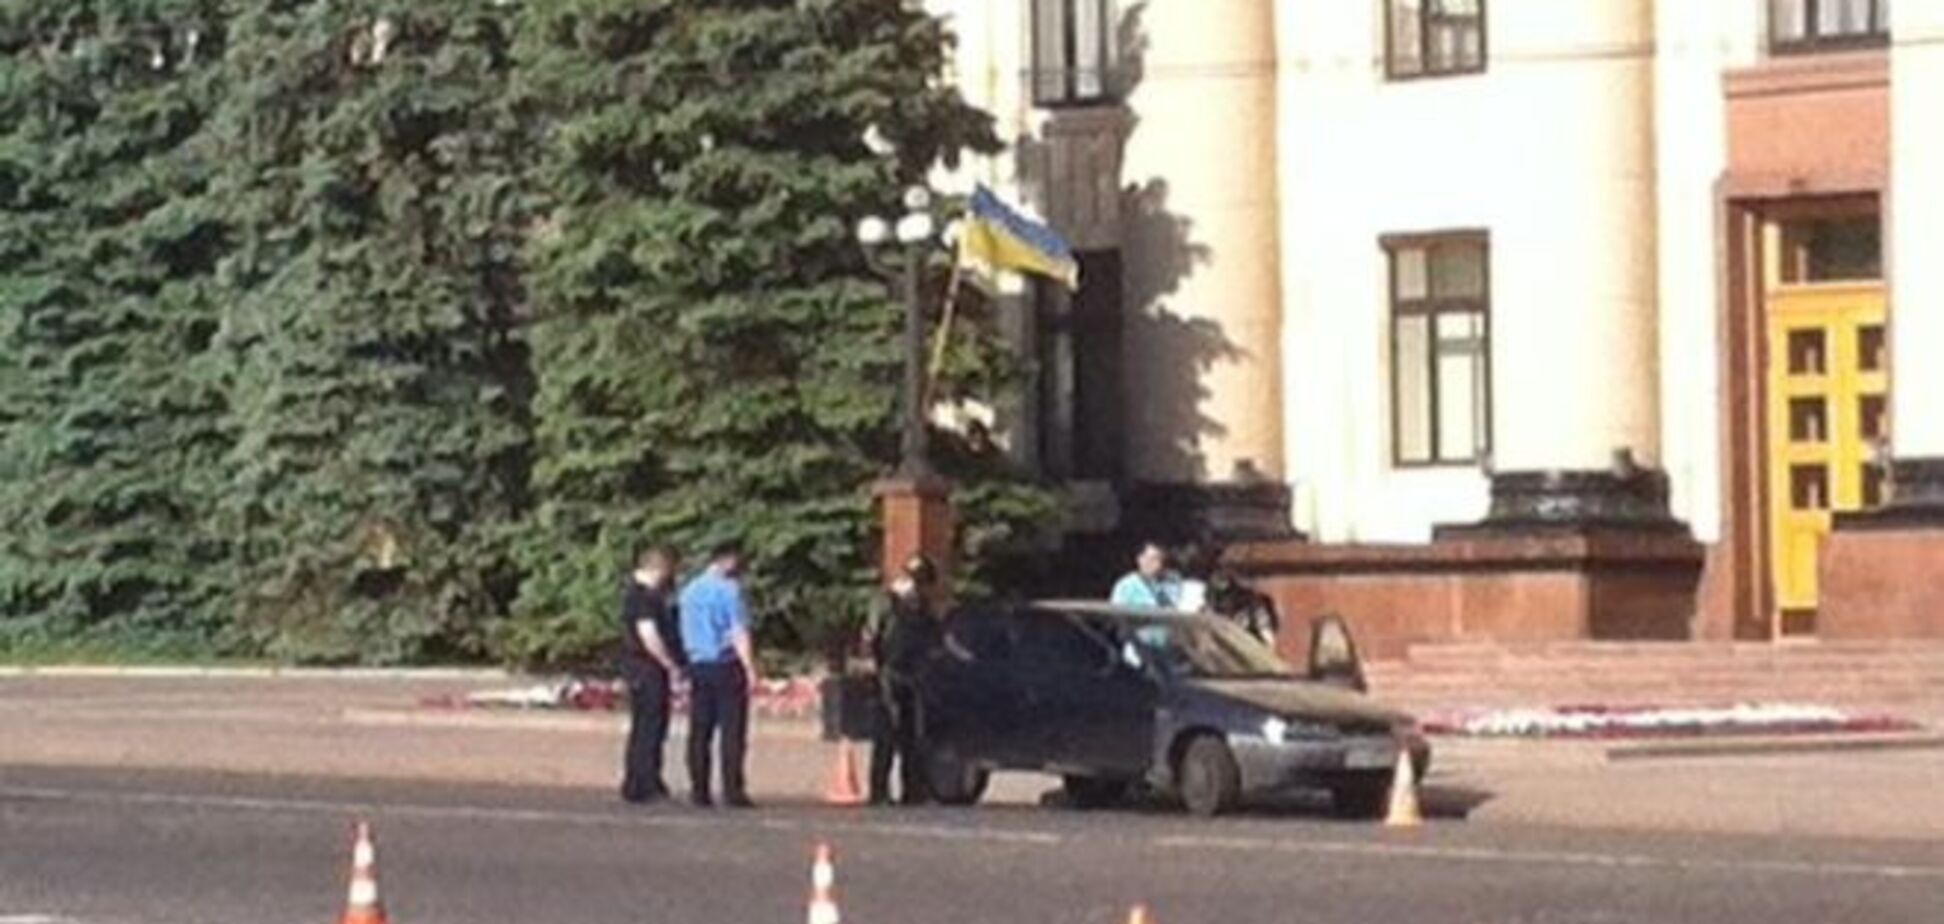 Авто с донецкими номерами устроило переполох в центре Харькова: фото с места событий